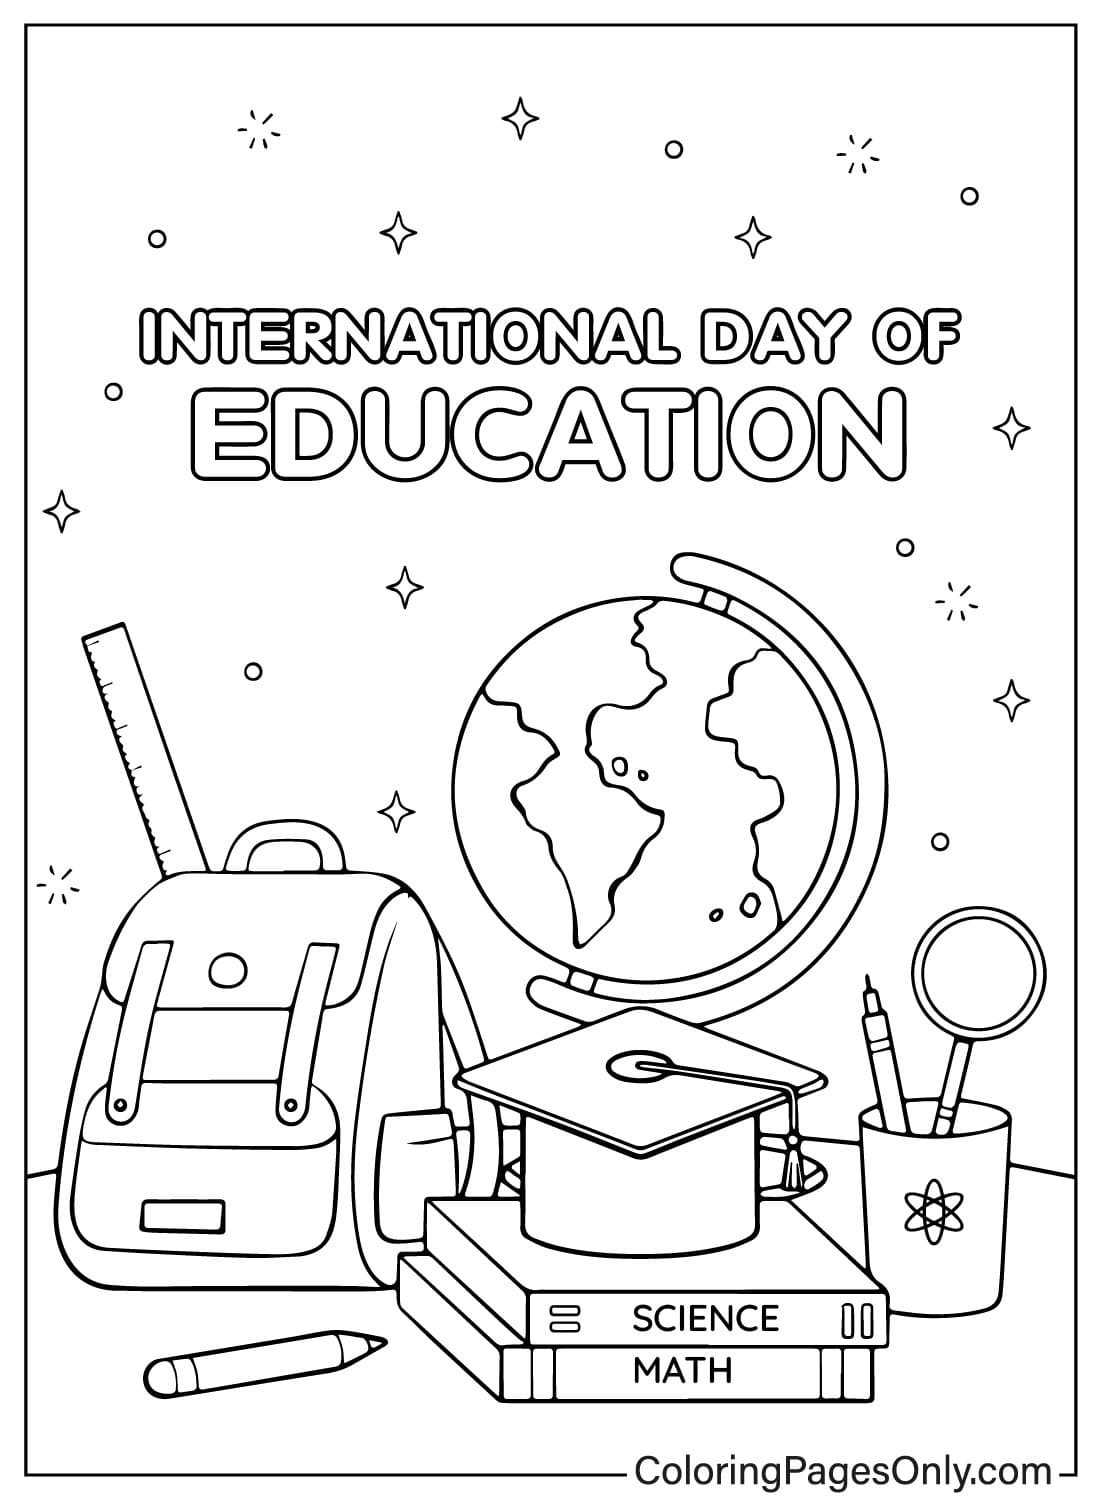 صفحة تلوين مجانية لليوم العالمي للتعليم من اليوم العالمي للتعليم